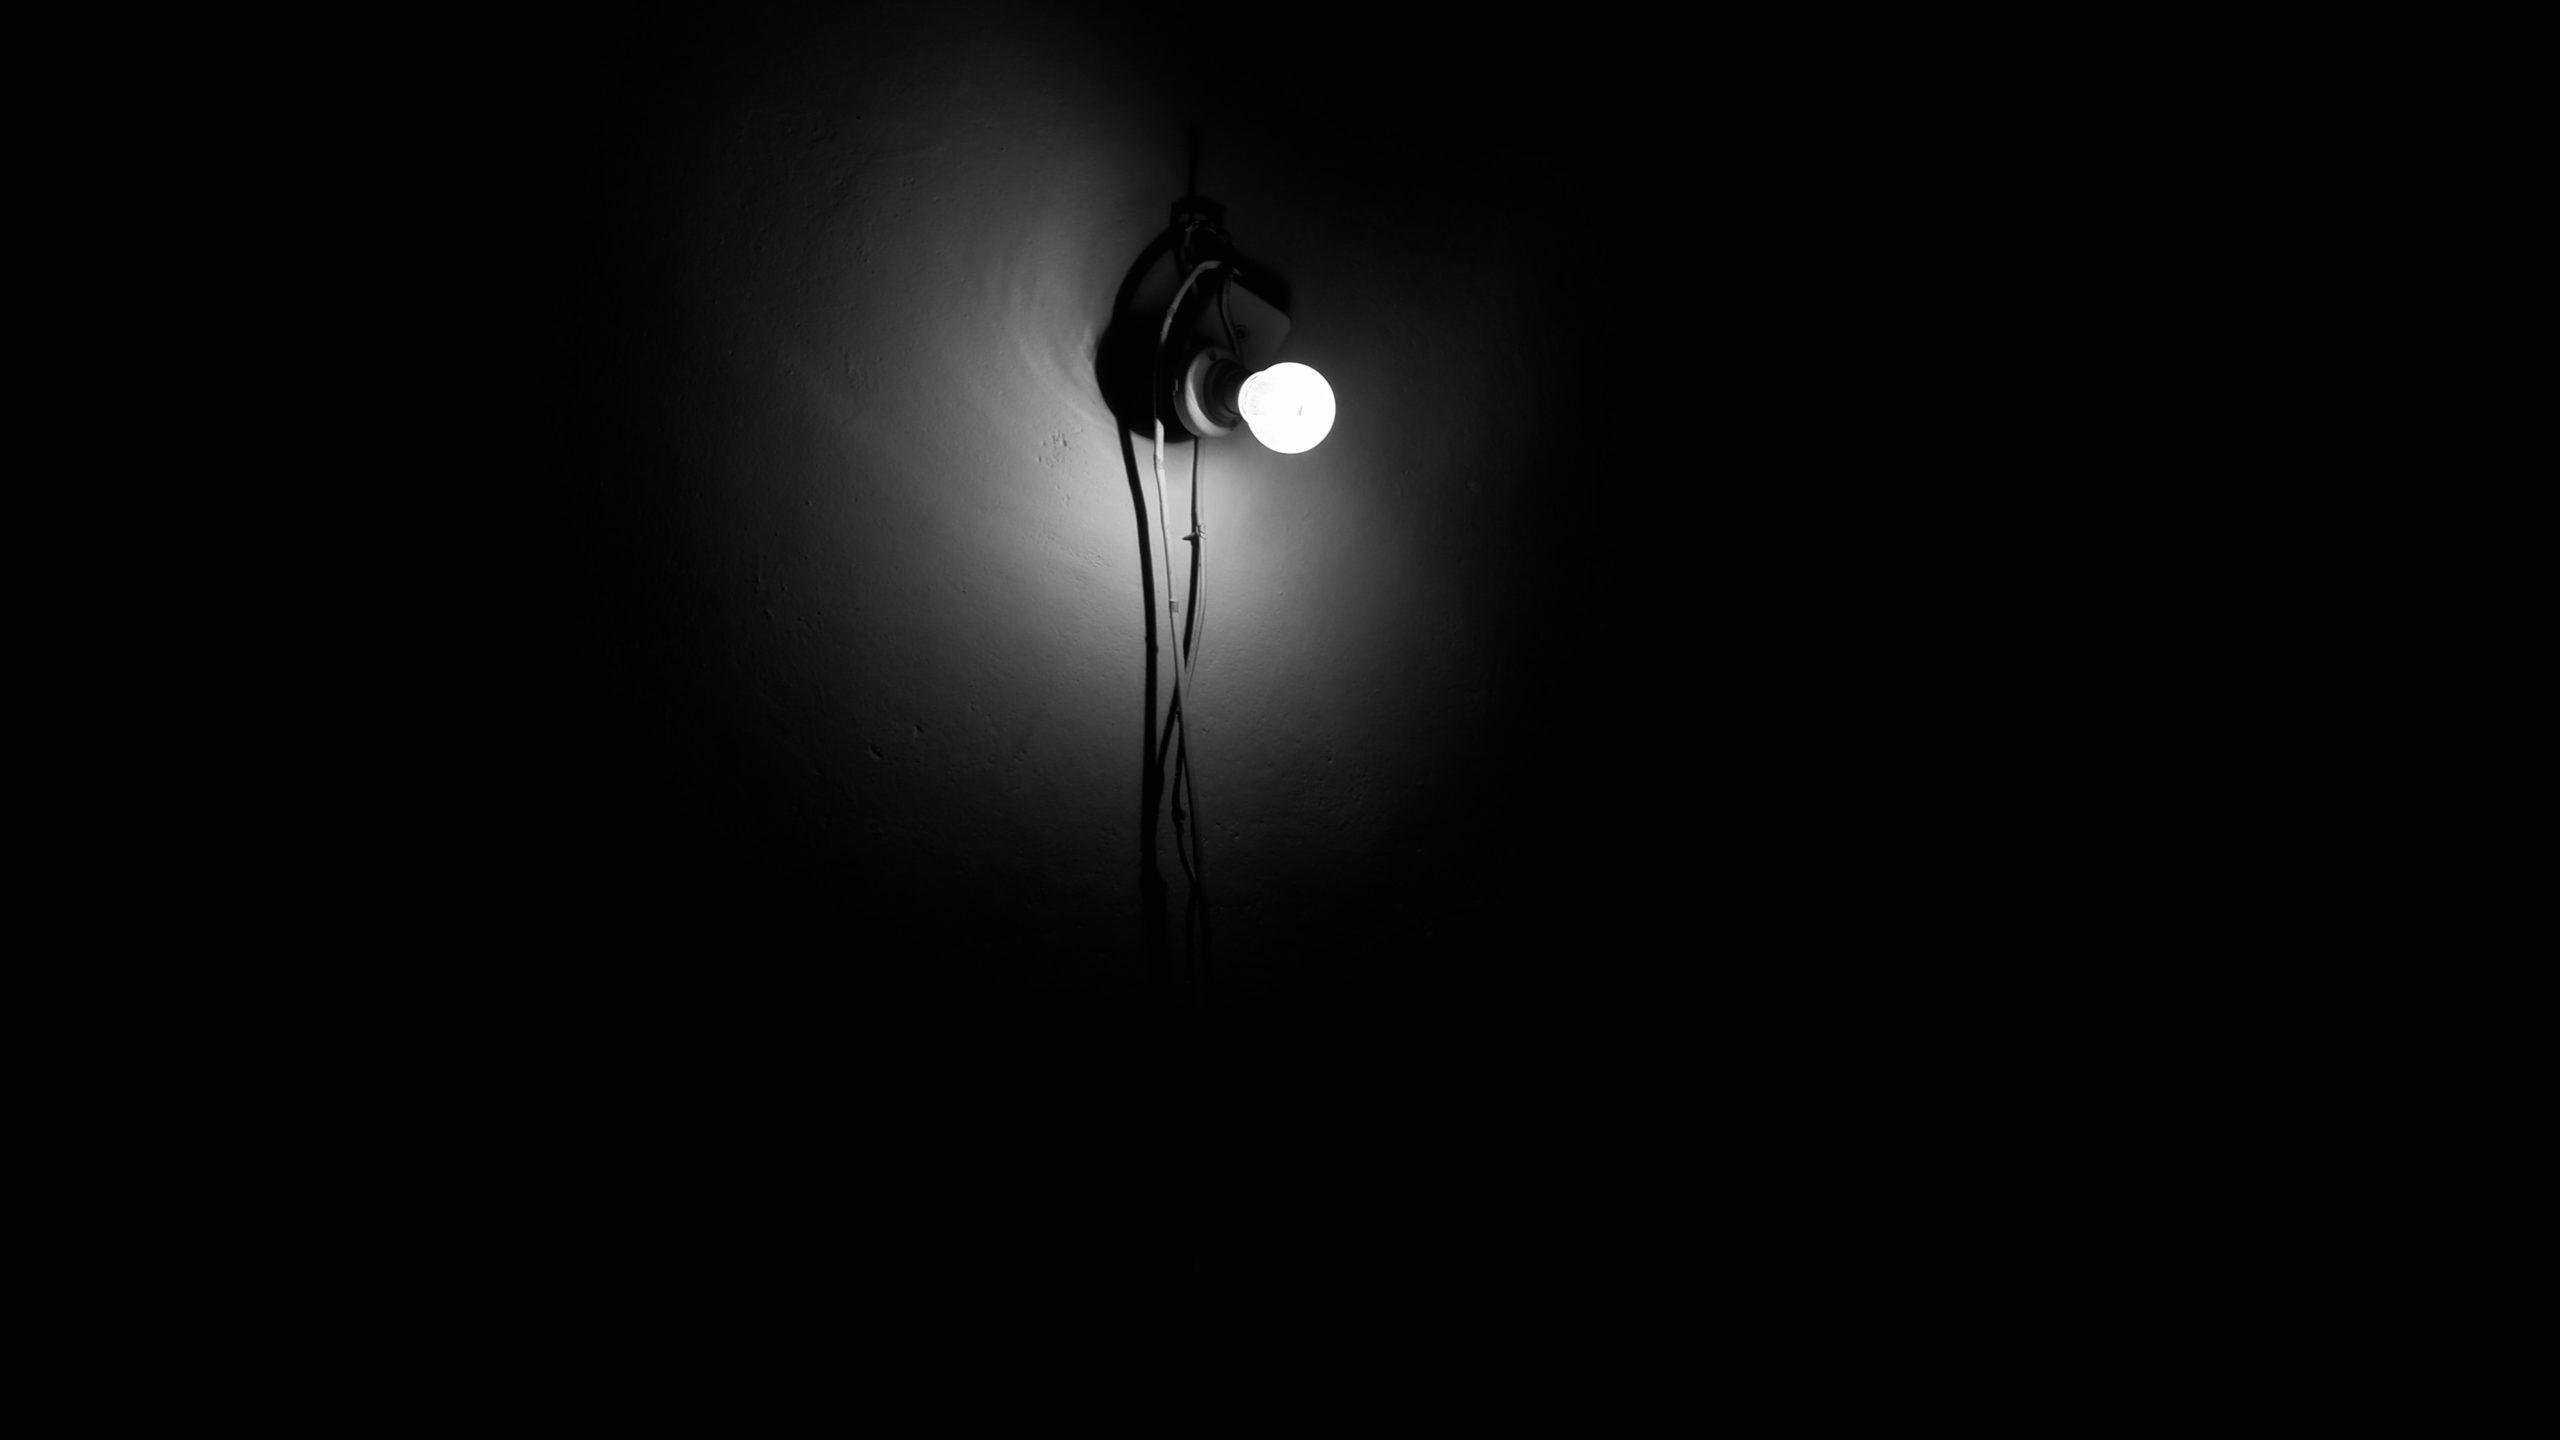 A bare light bulb illuminating a dark room